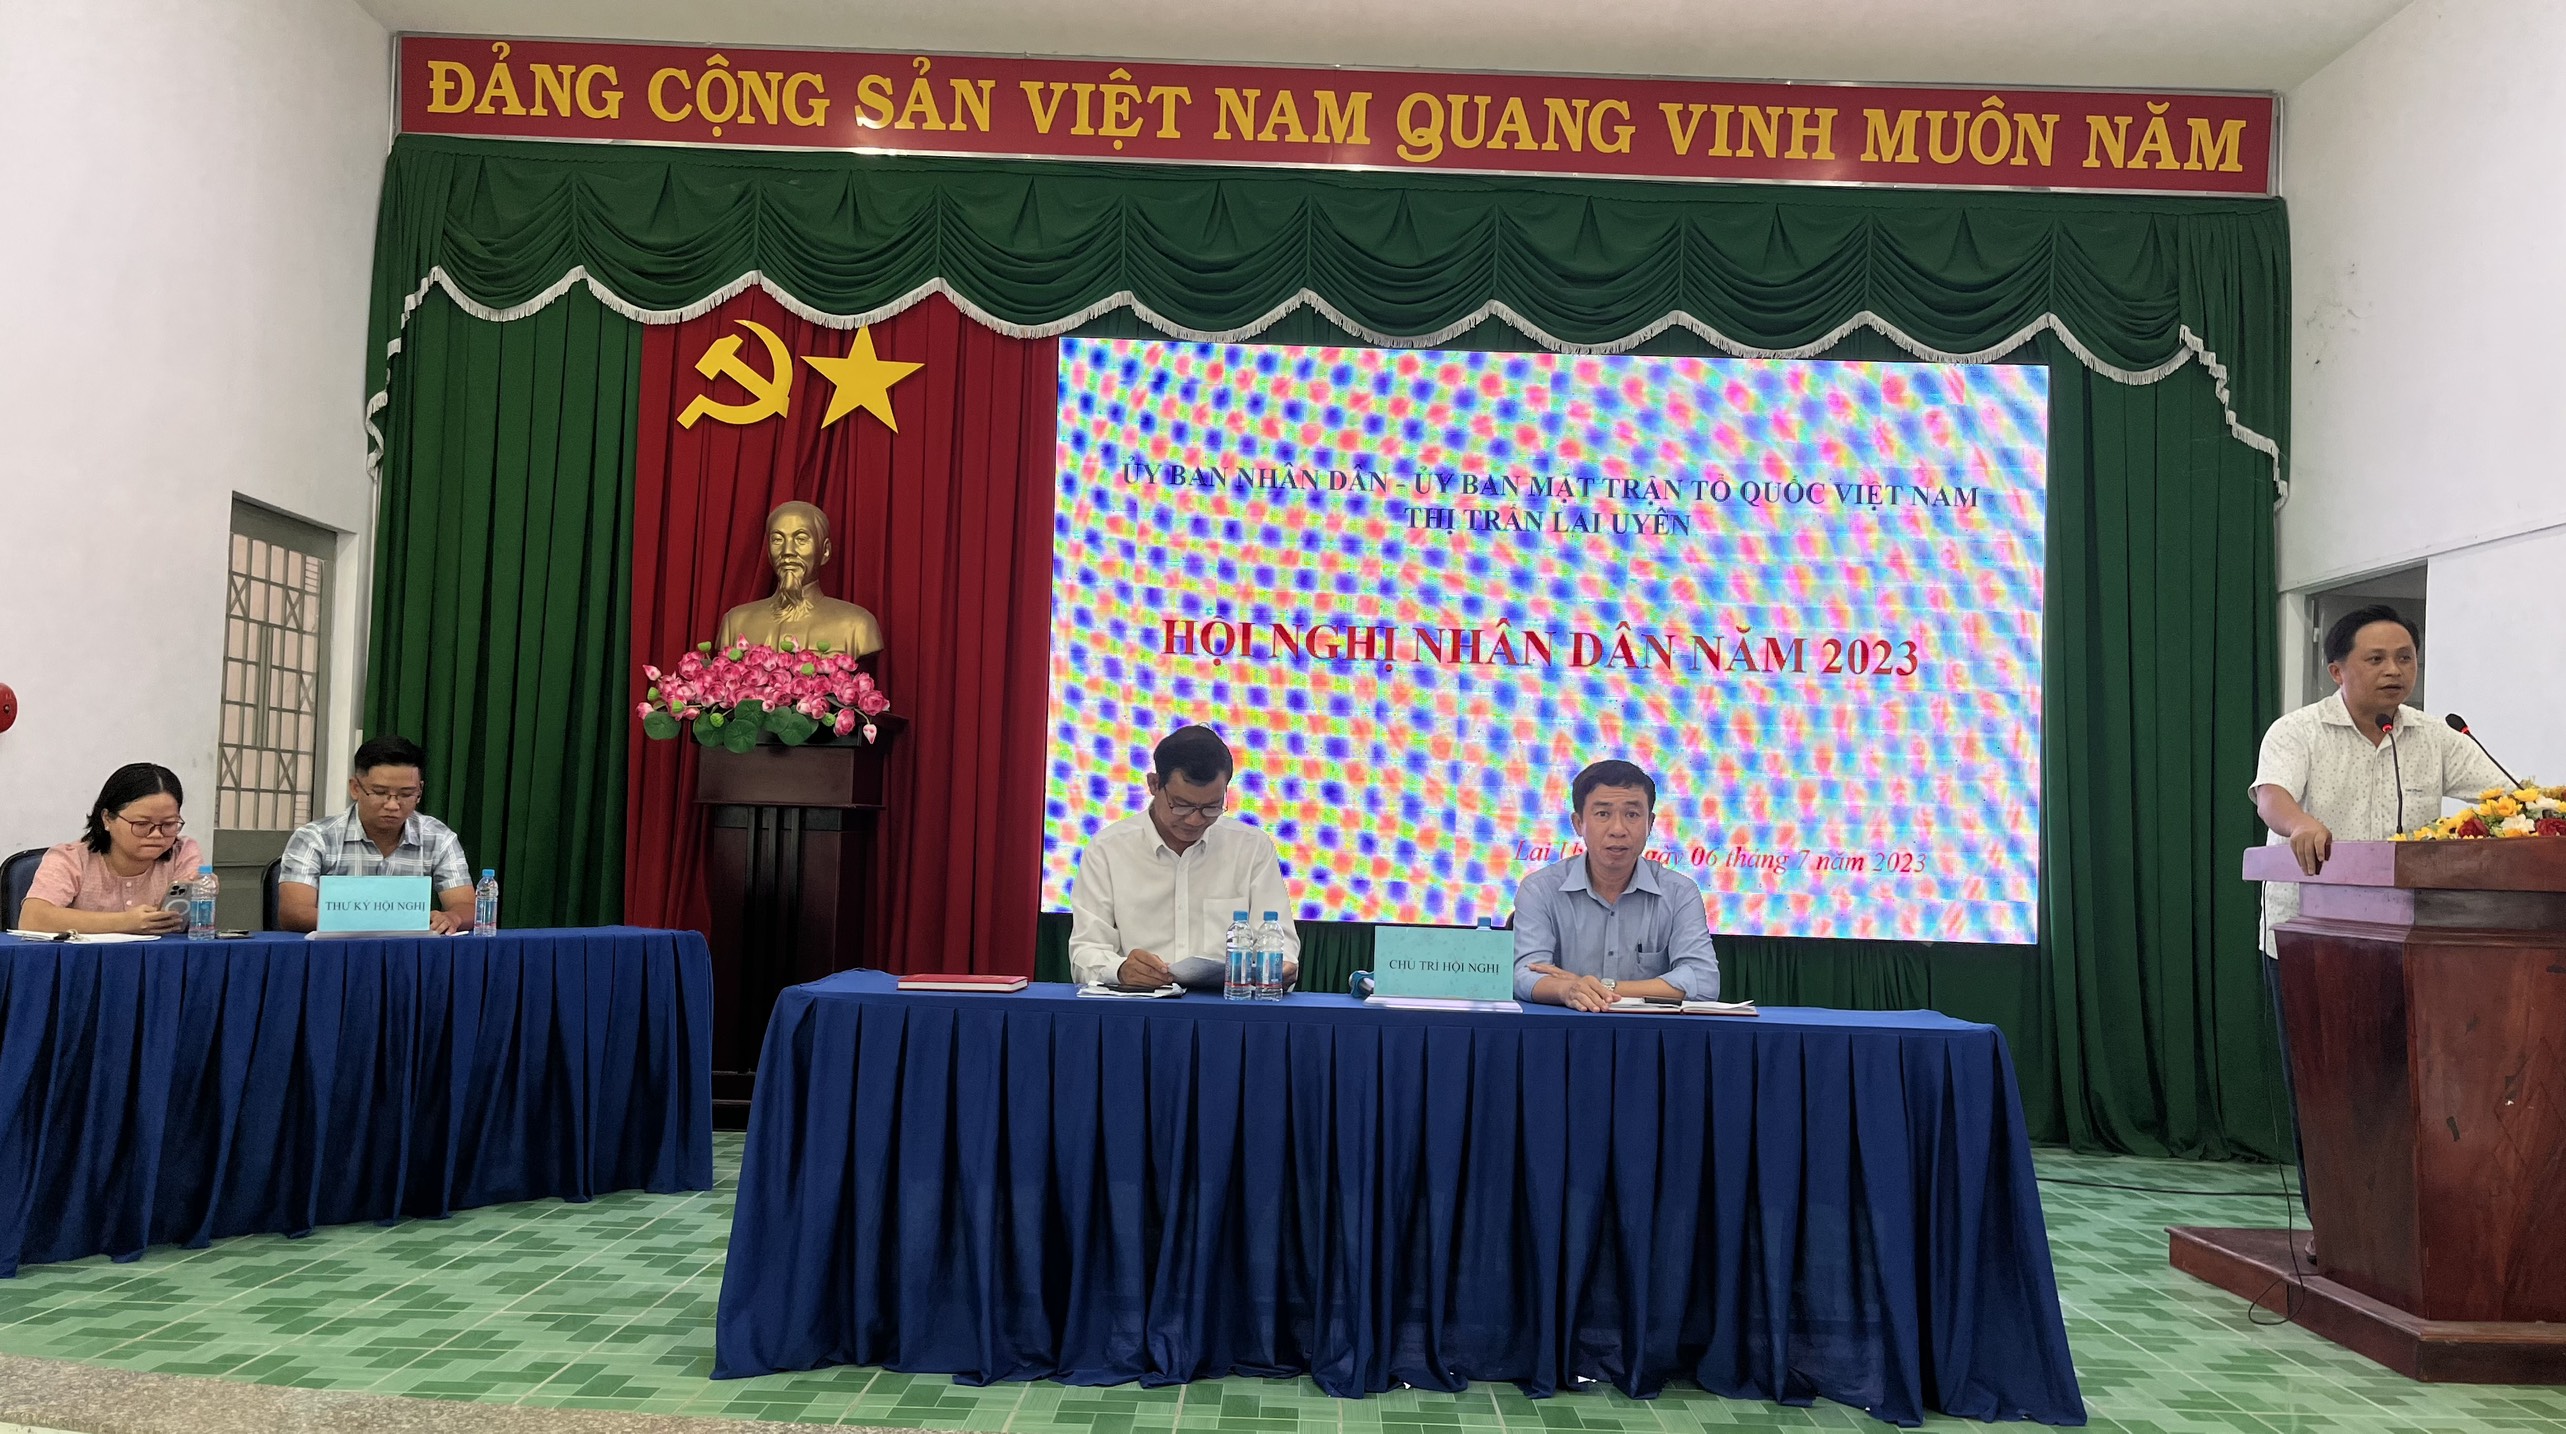 Thị trấn Lai Uyên tổ chức Hội nghị nhân dân năm 2023